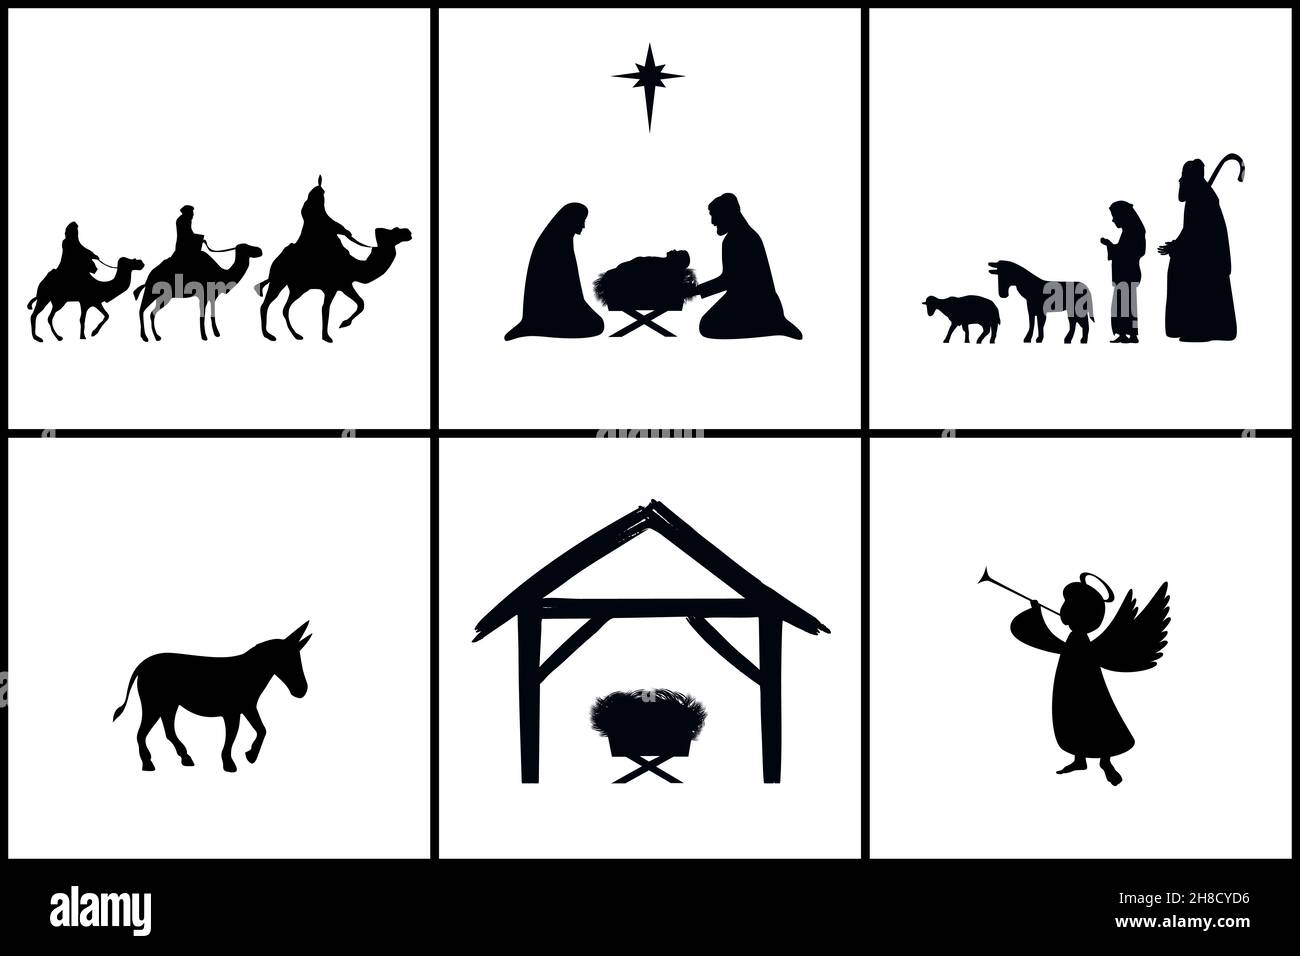 Ensemble de vacances silhouettes Noël christian Nativité.Histoire de la Bible Marie Joseph et le bébé Jésus dans un mangeur, étoile de Bethléem, trois sages, bergers Illustration de Vecteur